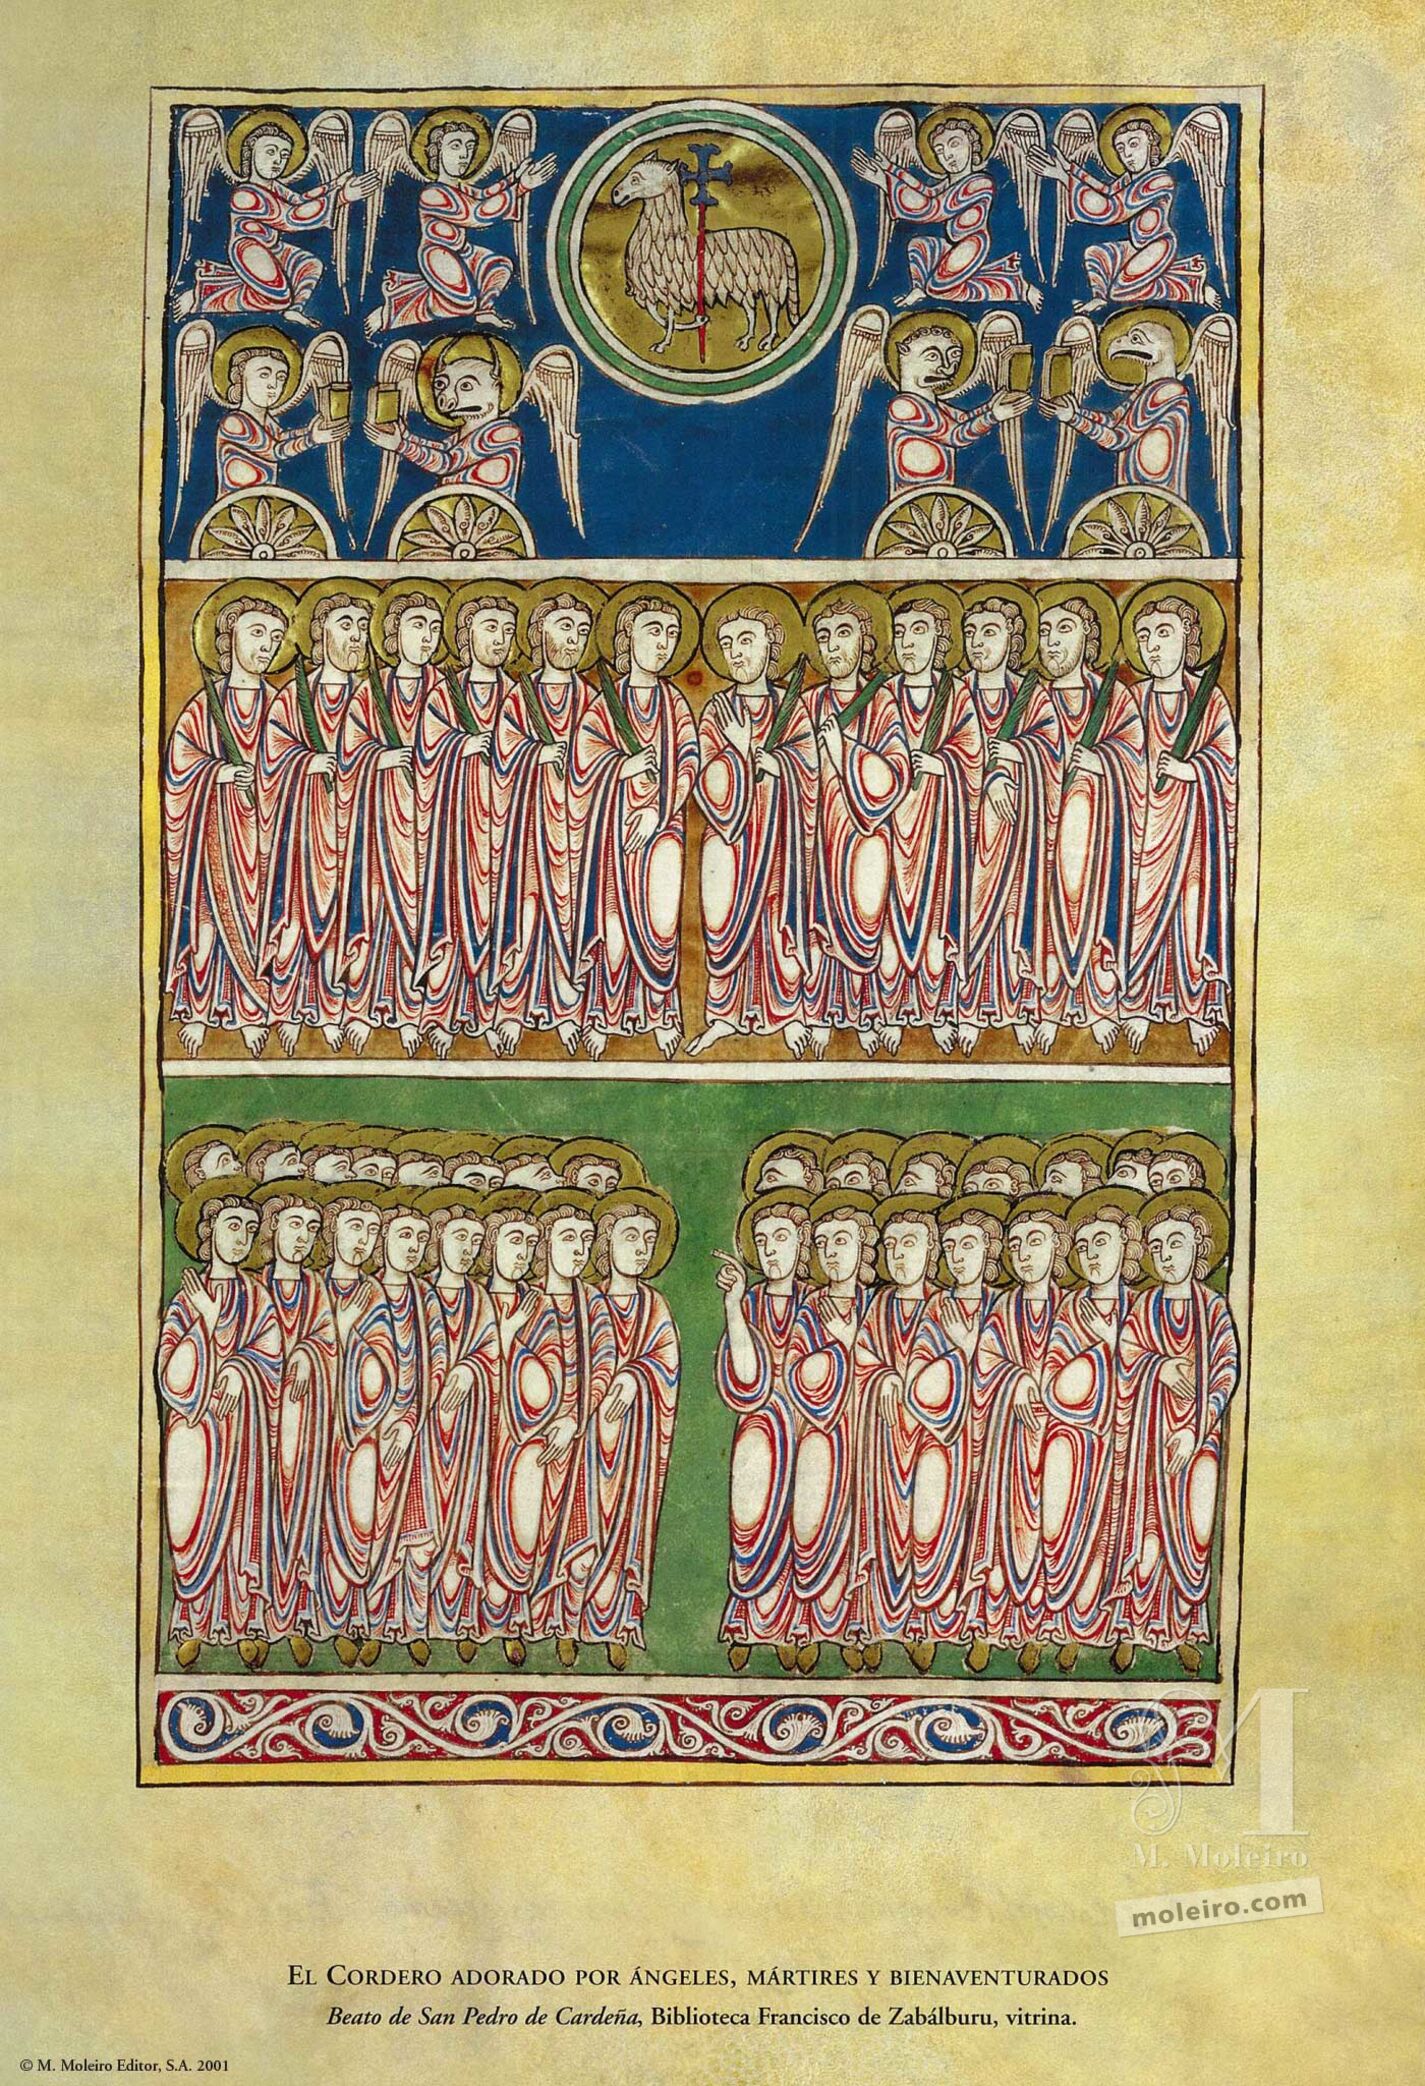 El Cordero adorado por ángeles, mártires y bienaventurados (folio 82), Beato de Liébana, códice de San Pedro de Cardeña